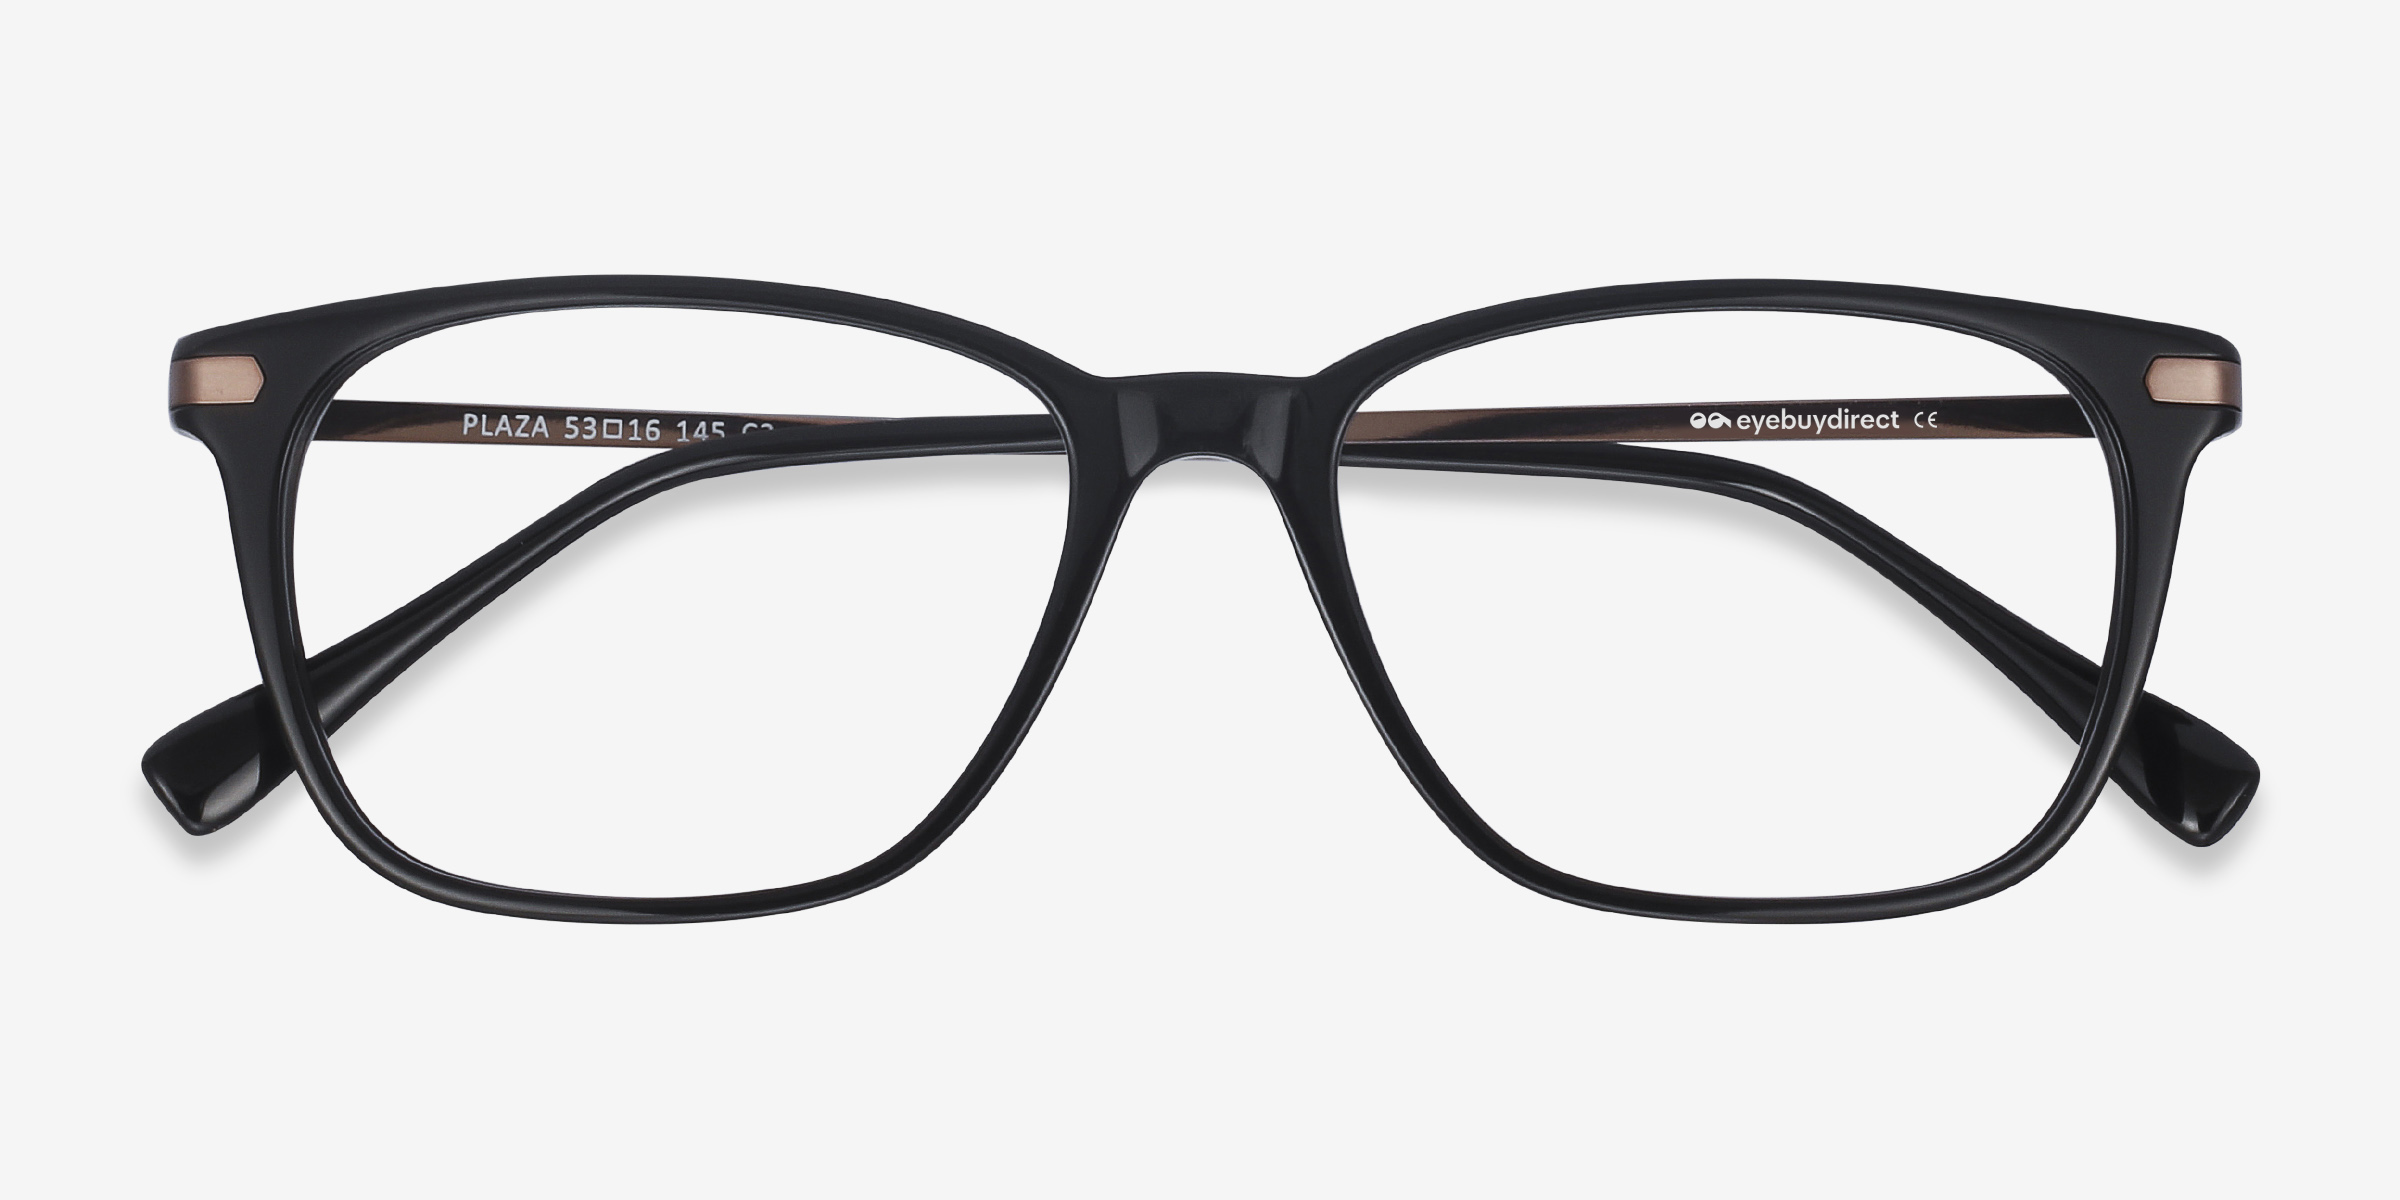 Plaza Rectangle Black Full Rim Eyeglasses | Eyebuydirect Canada